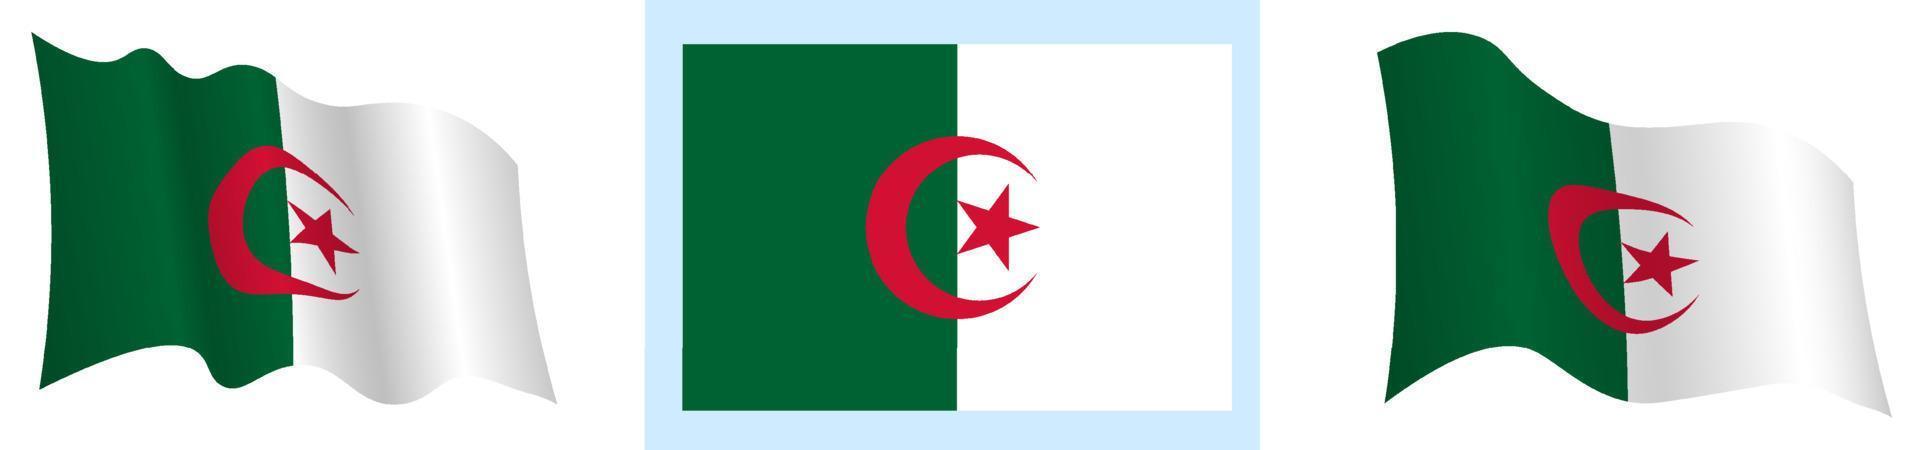 Flagge von Algerien in statischer Position und in Bewegung, im Wind flatternd in genauen Farben und Größen, auf weißem Hintergrund vektor